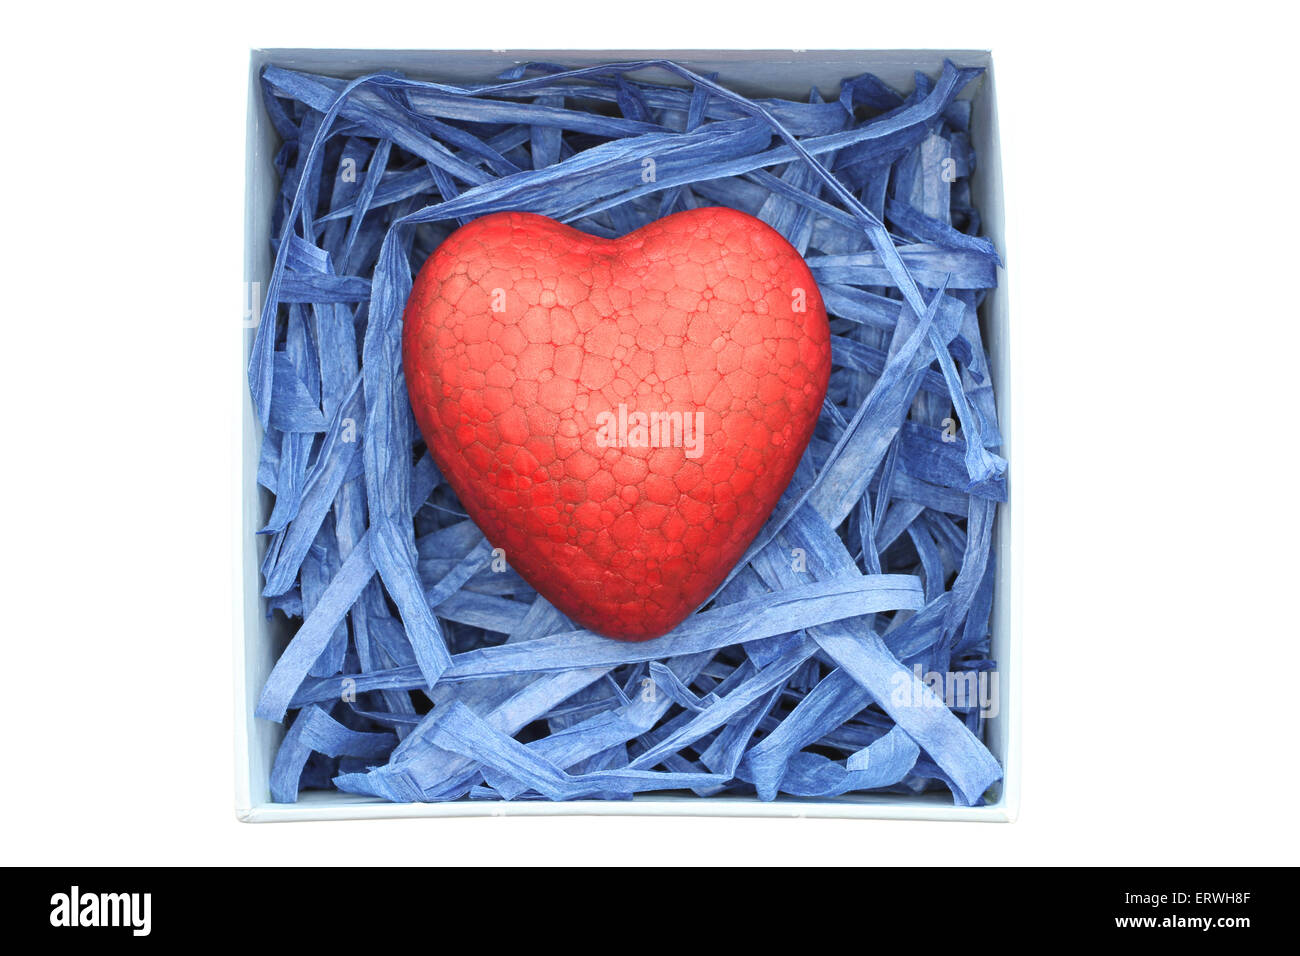 Poliespuma pintadas de rojo corazón cerrado con tiras de rafia papel azul en el cuadro azul claro aislado sobre fondo blanco. Foto de stock